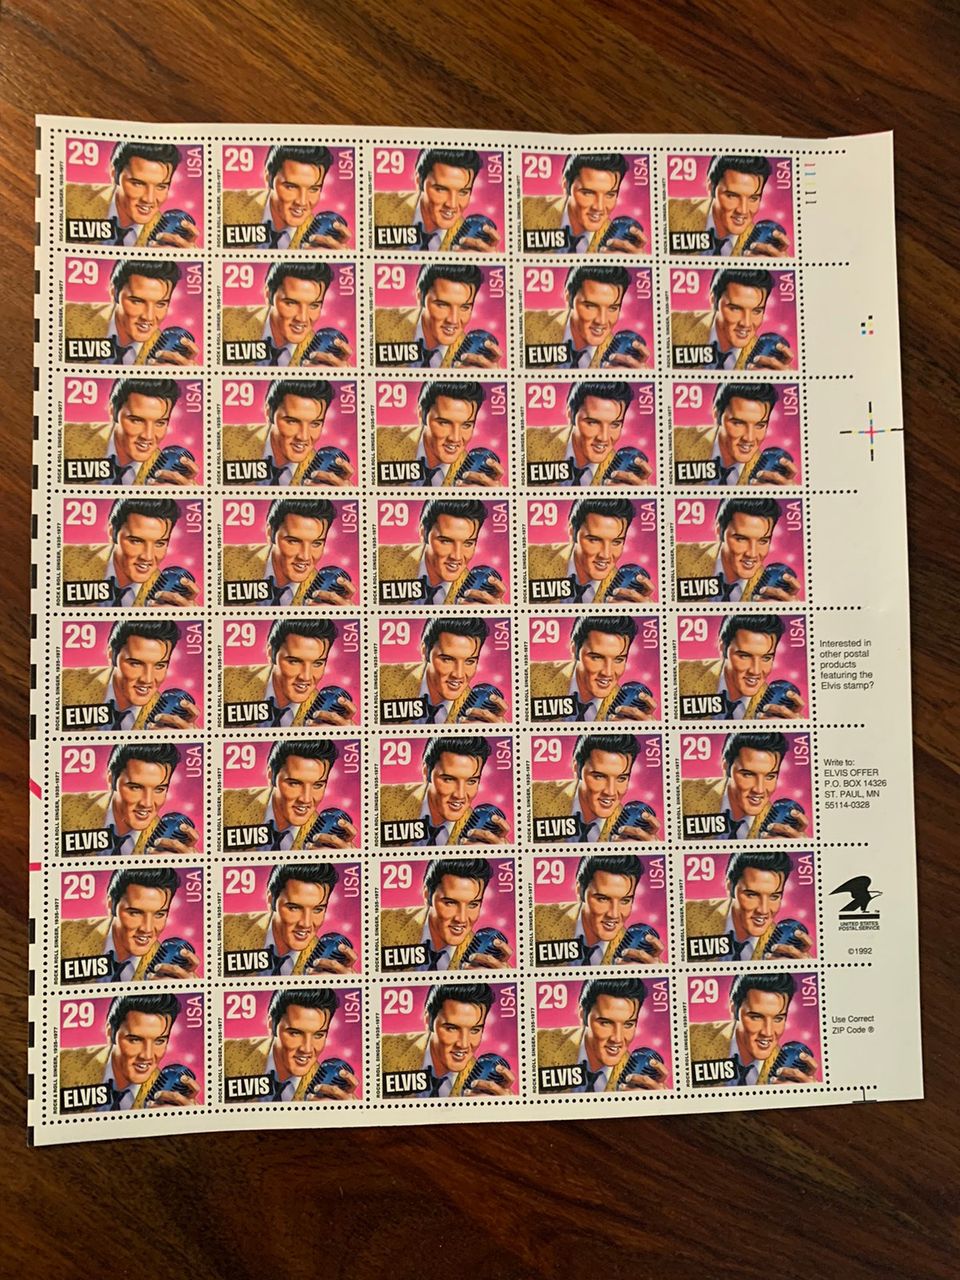 Elvis postimerkkejä